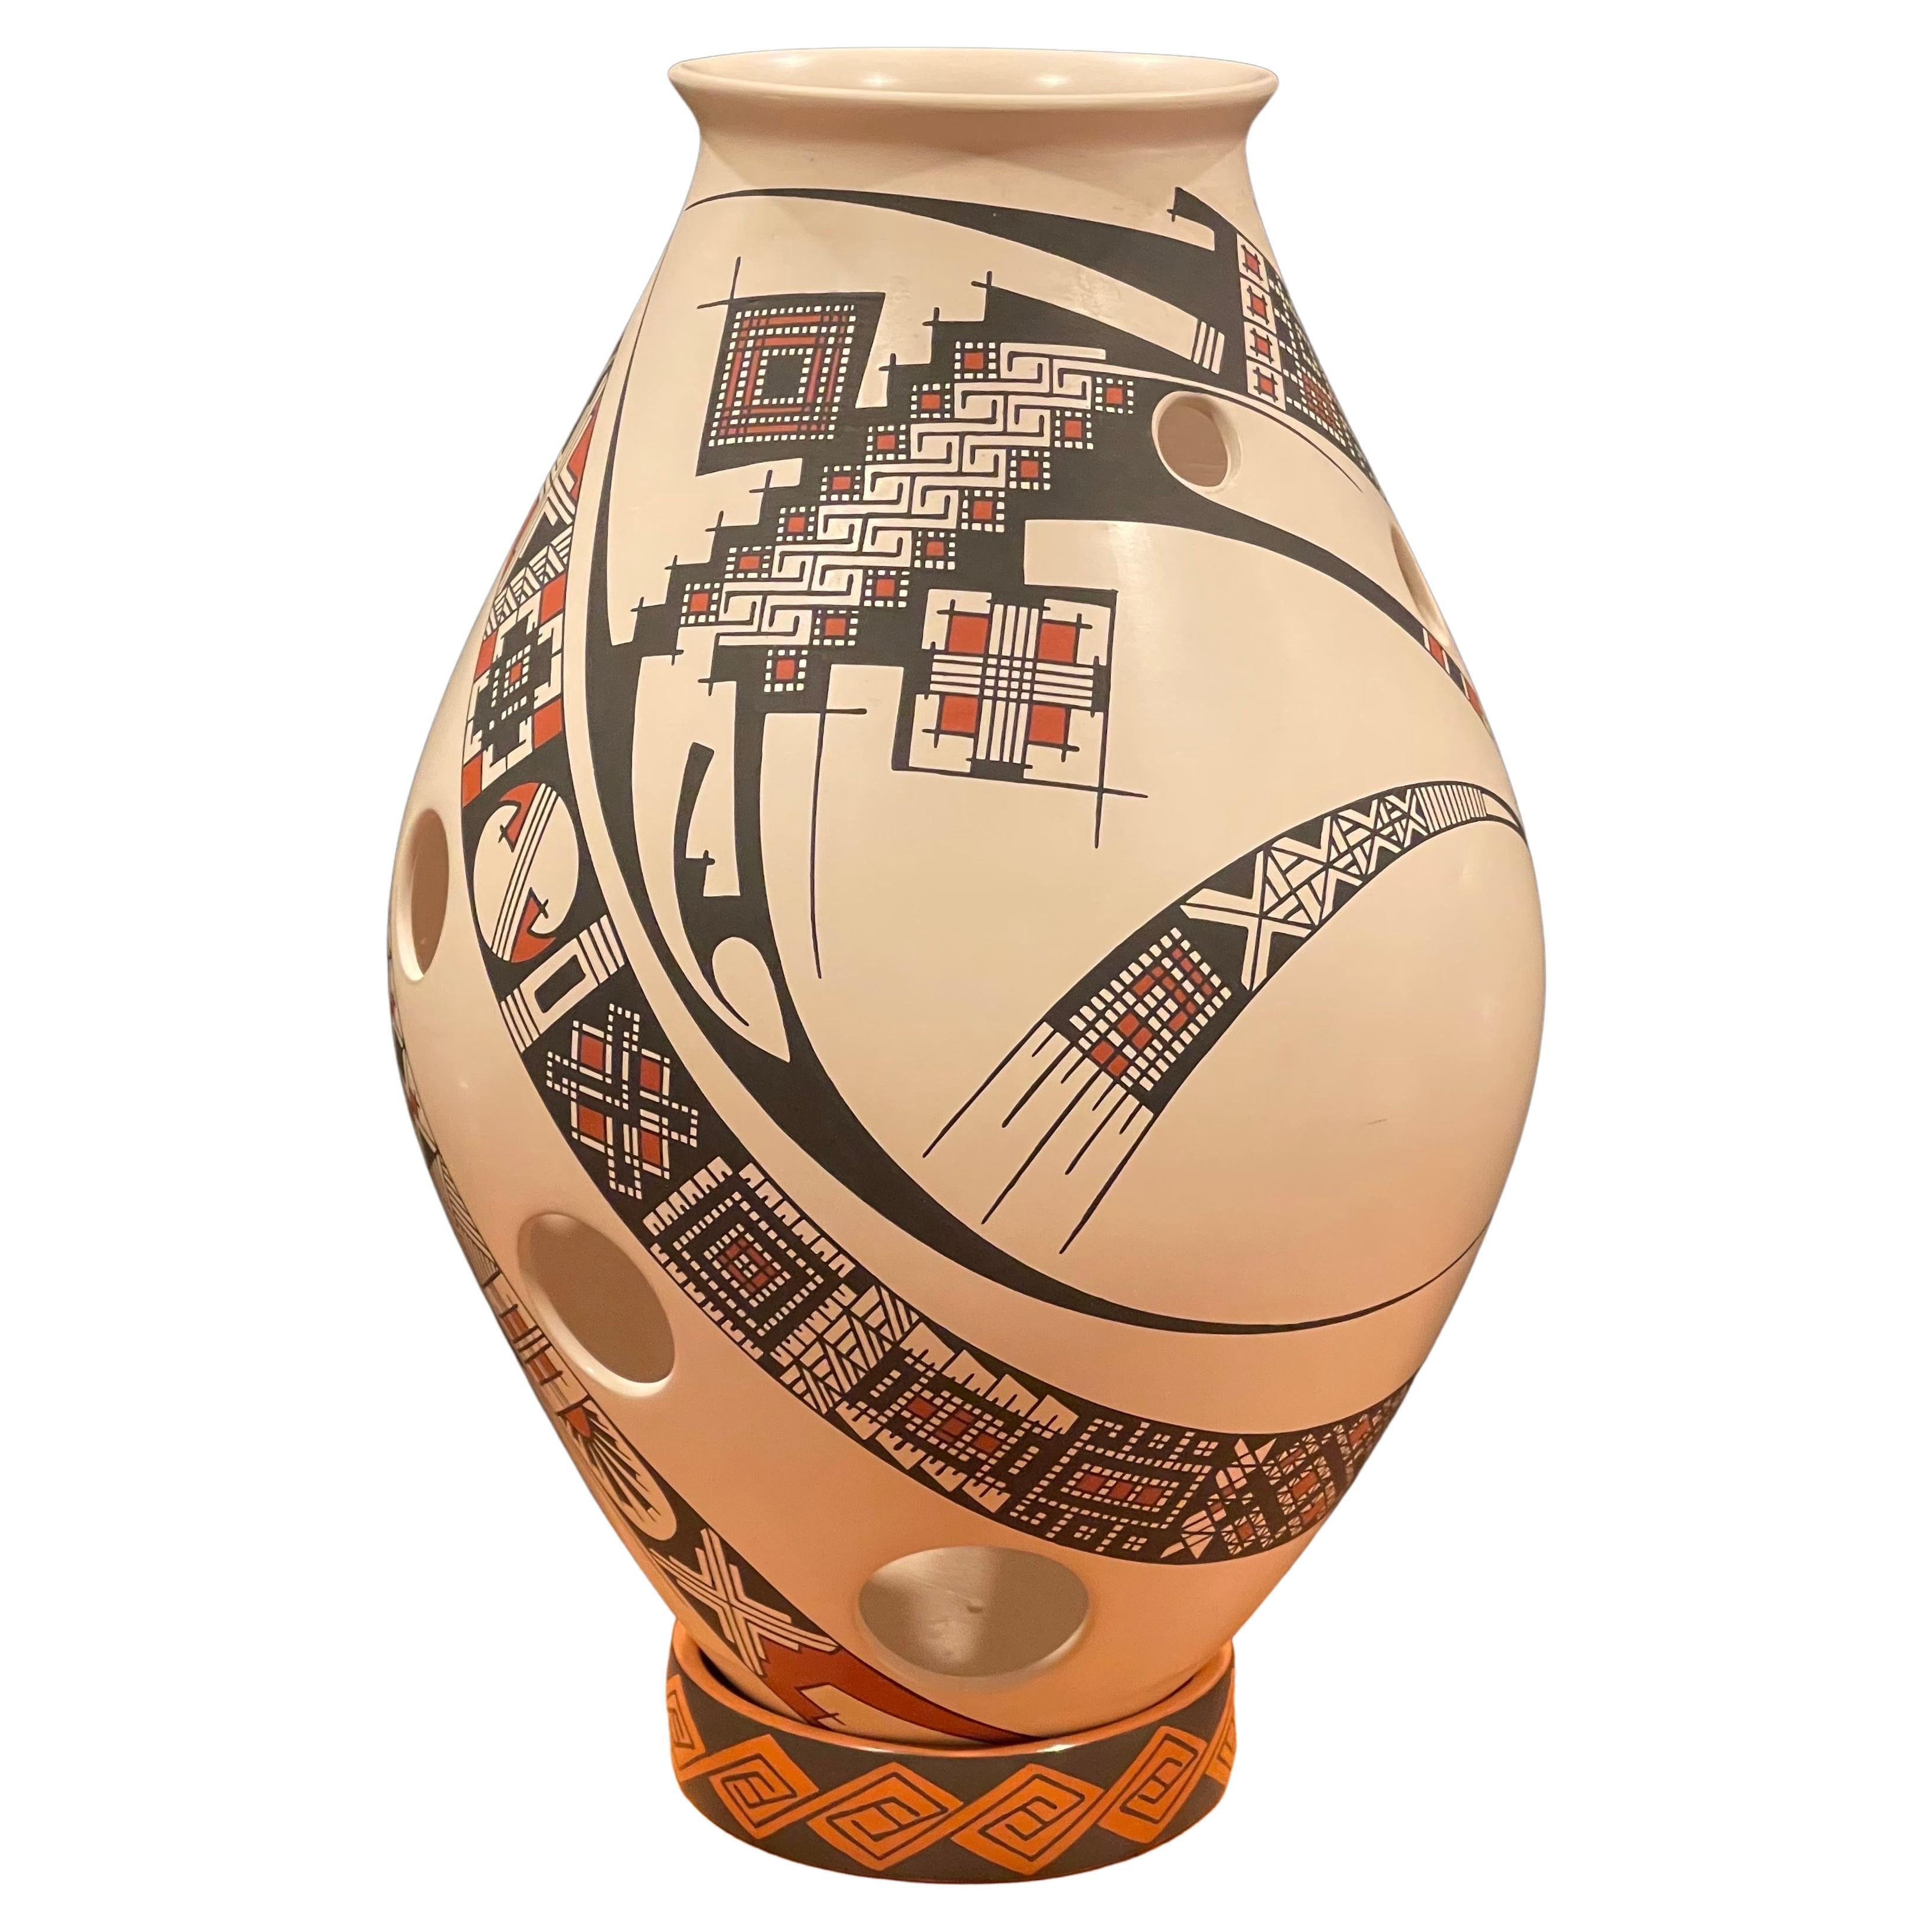 Grand pot / Olla « Paquime Pottery » de Damian E. Quezada pour Mata Ortiz